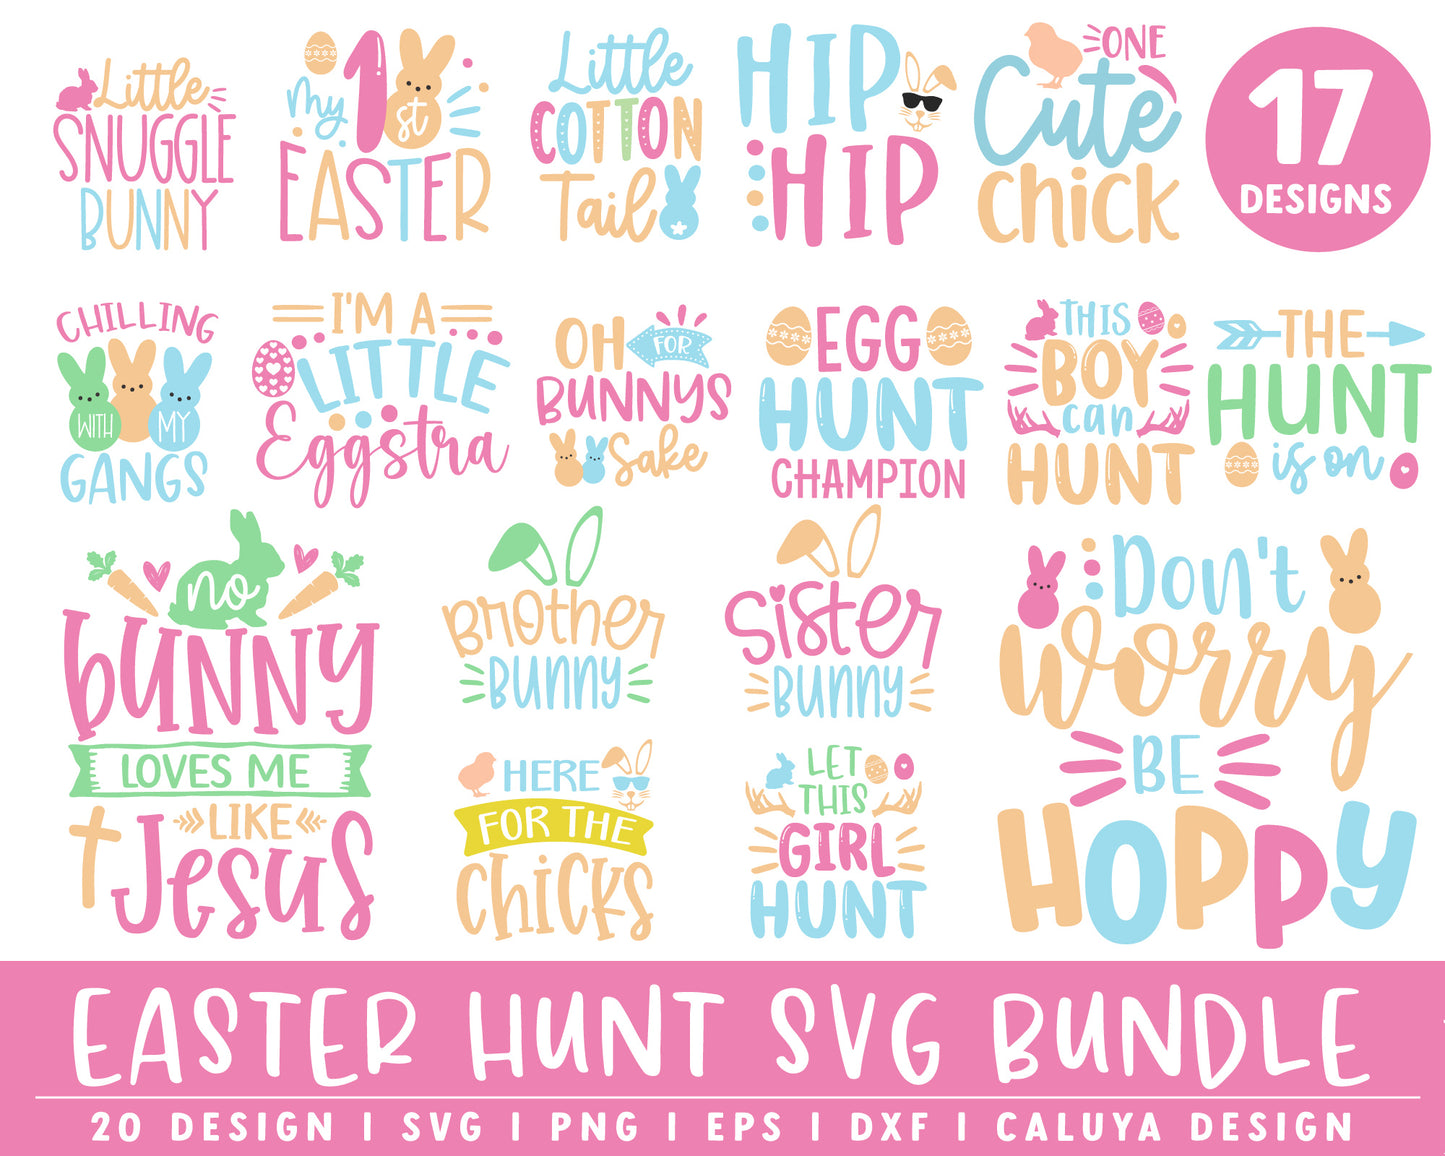 Easter Hunt SVG Bundle | 17 Pack